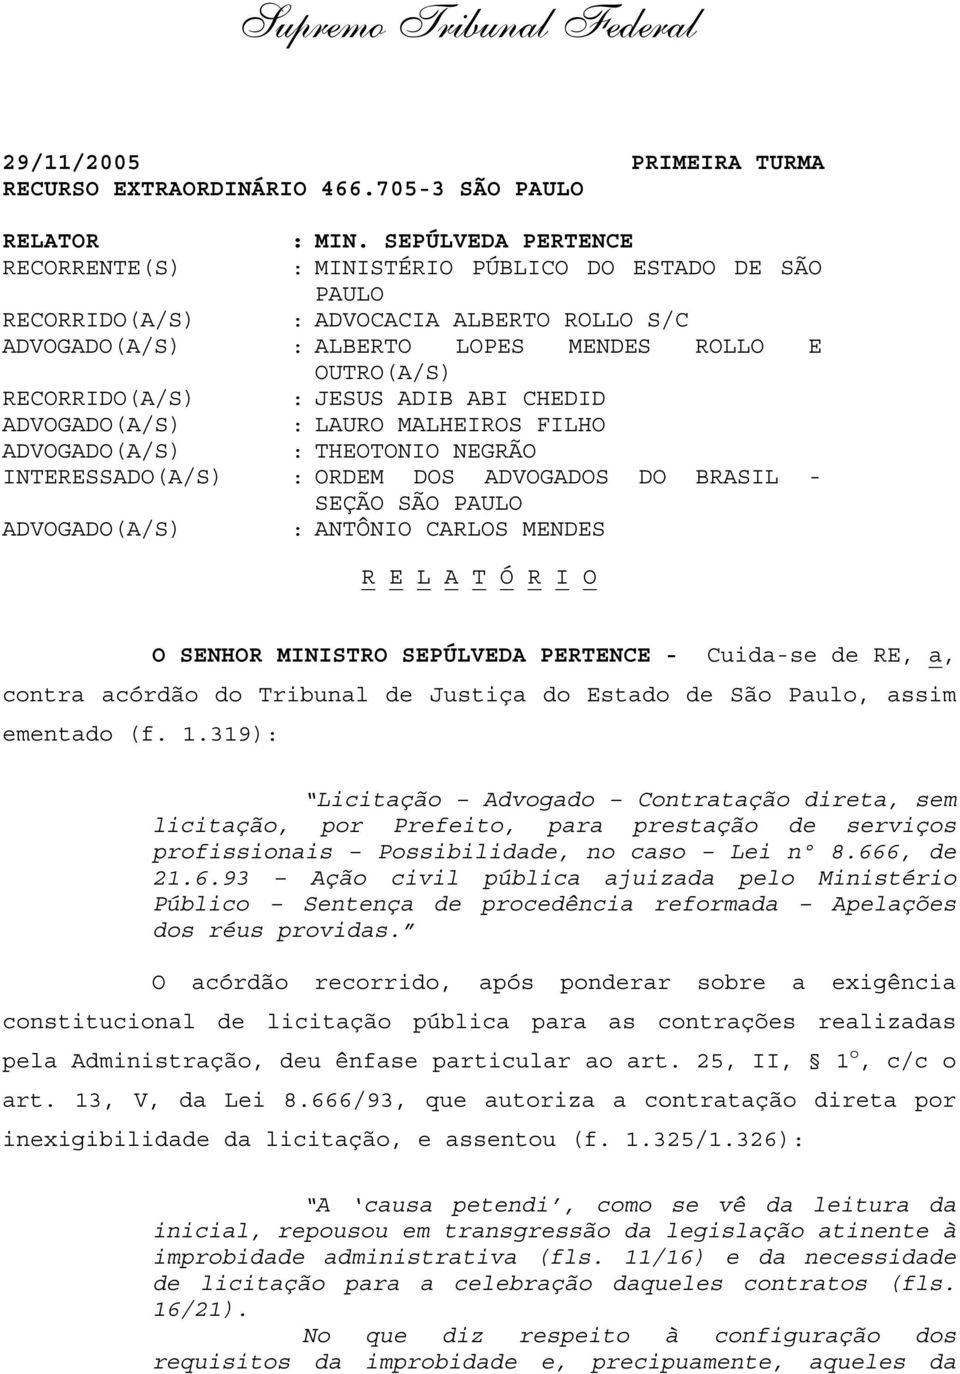 JESUS ADIB ABI CHEDID ADVOGADO(A/S) : LAURO MALHEIROS FILHO ADVOGADO(A/S) : THEOTONIO NEGRÃO INTERESSADO(A/S) : ORDEM DOS ADVOGADOS DO BRASIL - SEÇÃO SÃO PAULO ADVOGADO(A/S) : ANTÔNIO CARLOS MENDES R